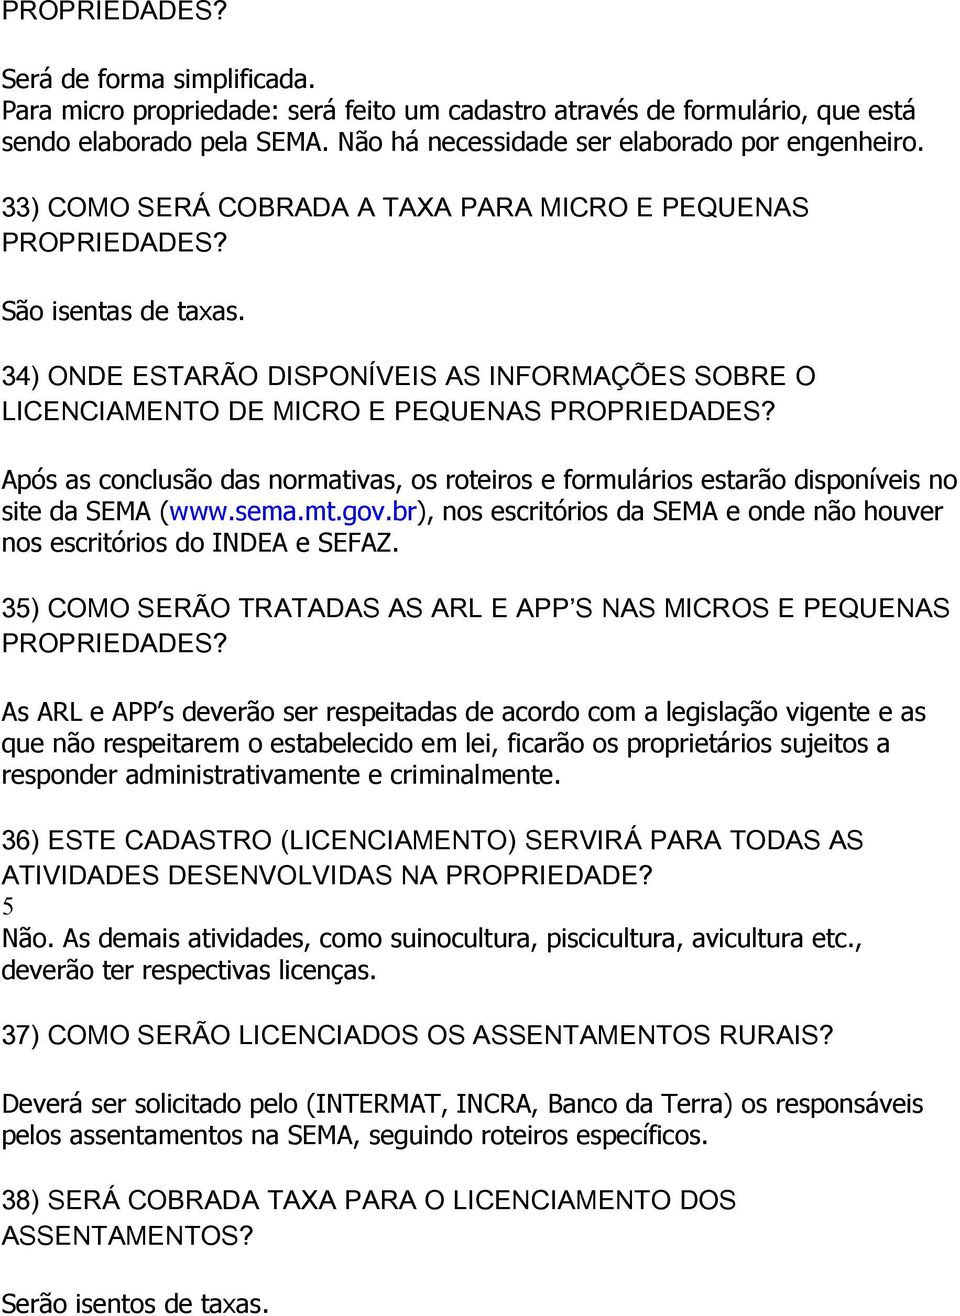 Após as conclusão das normativas, os roteiros e formulários estarão disponíveis no site da SEMA (www.sema.mt.gov.br), nos escritórios da SEMA e onde não houver nos escritórios do INDEA e SEFAZ.